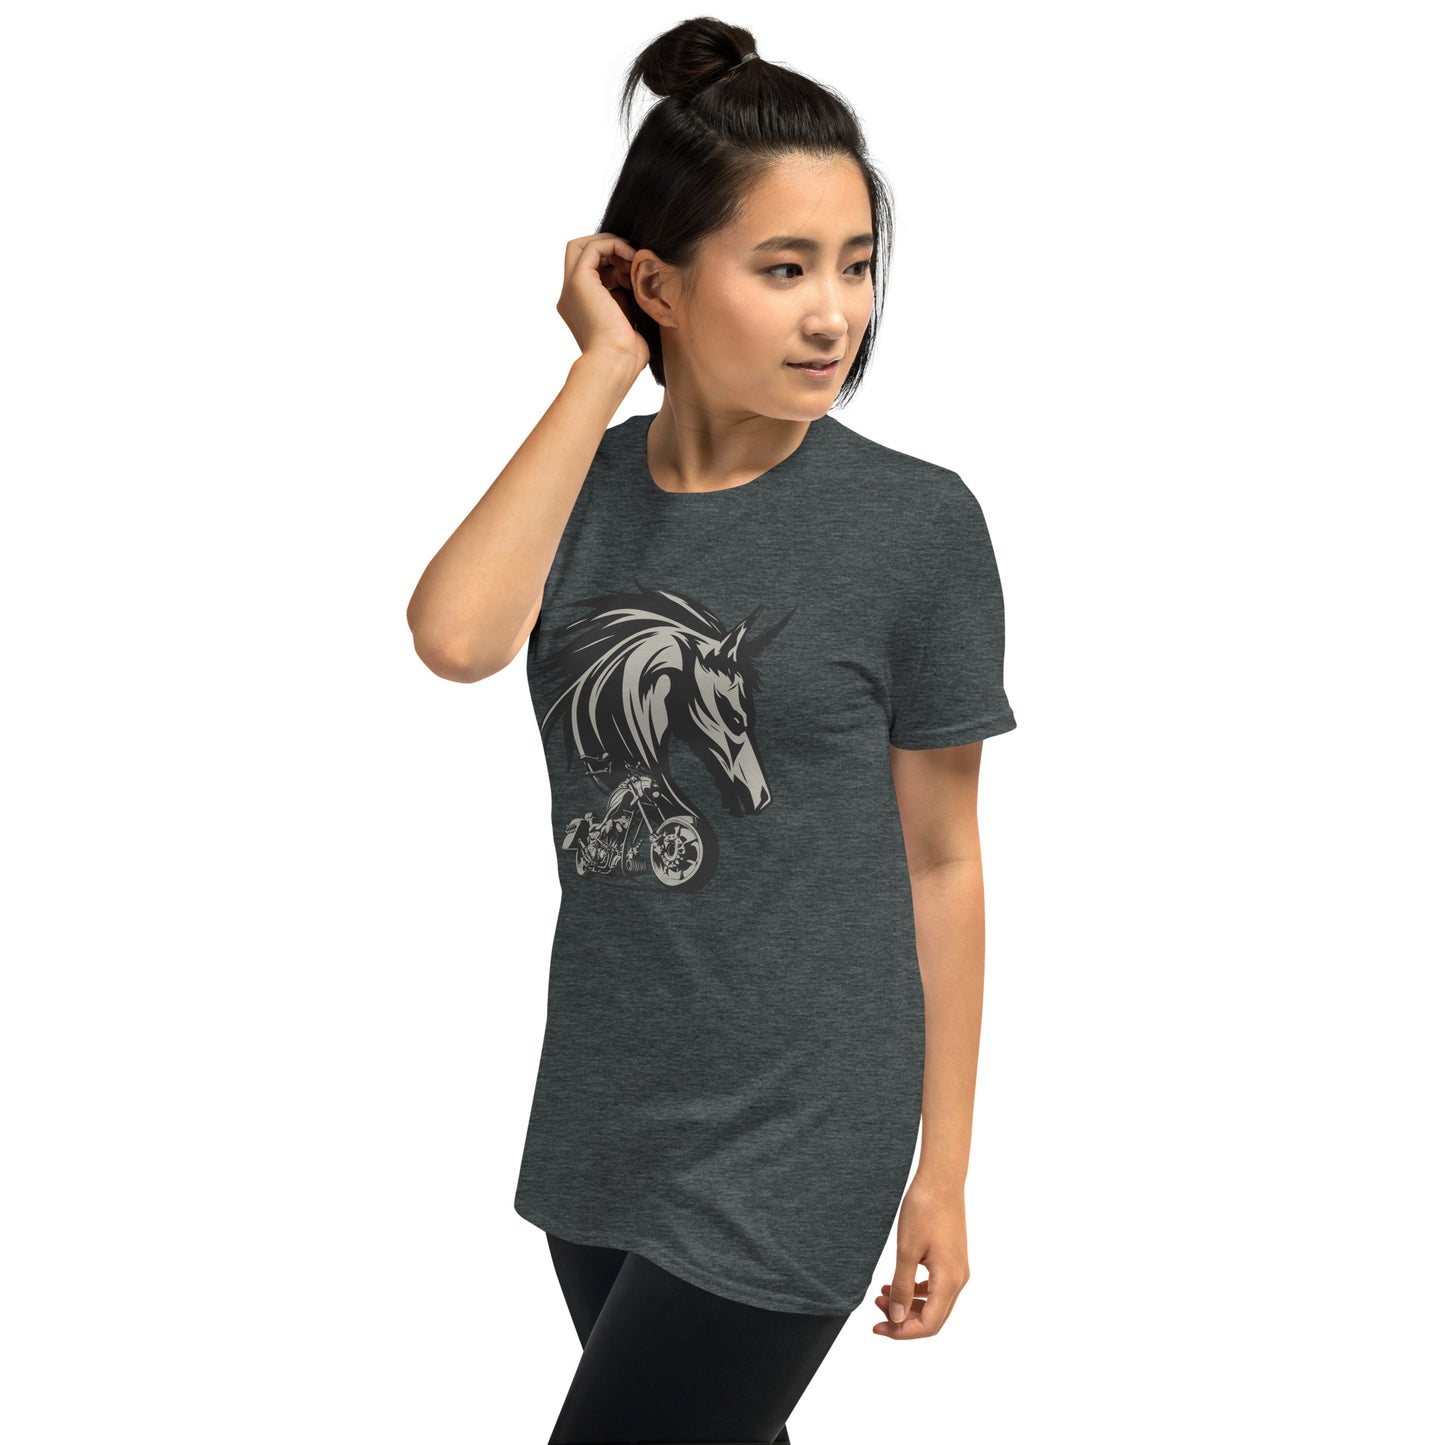 Spirit of a Steel Horse Short-Sleeve Unisex T-Shirt